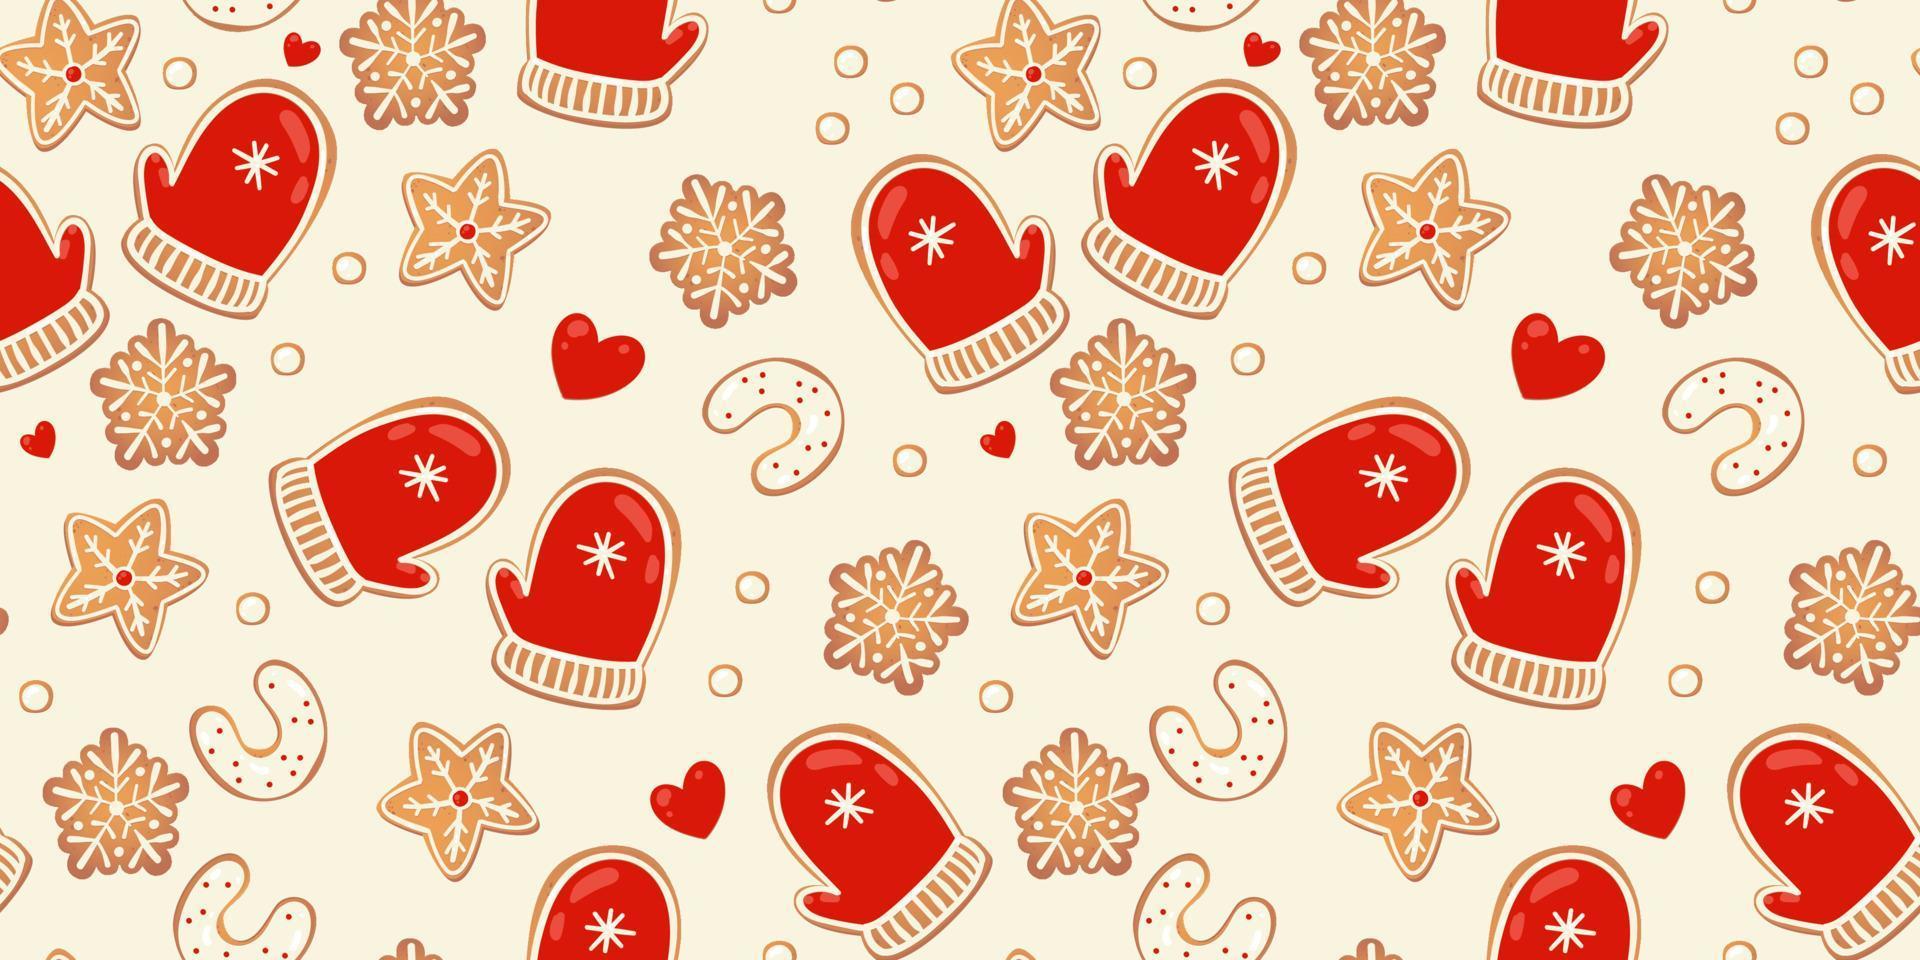 Navidad pan de jengibre vector de patrones sin fisuras. personajes de invierno en estilo de dibujos animados. fondo de diseño de vacaciones. estilo escandinavo de año nuevo.